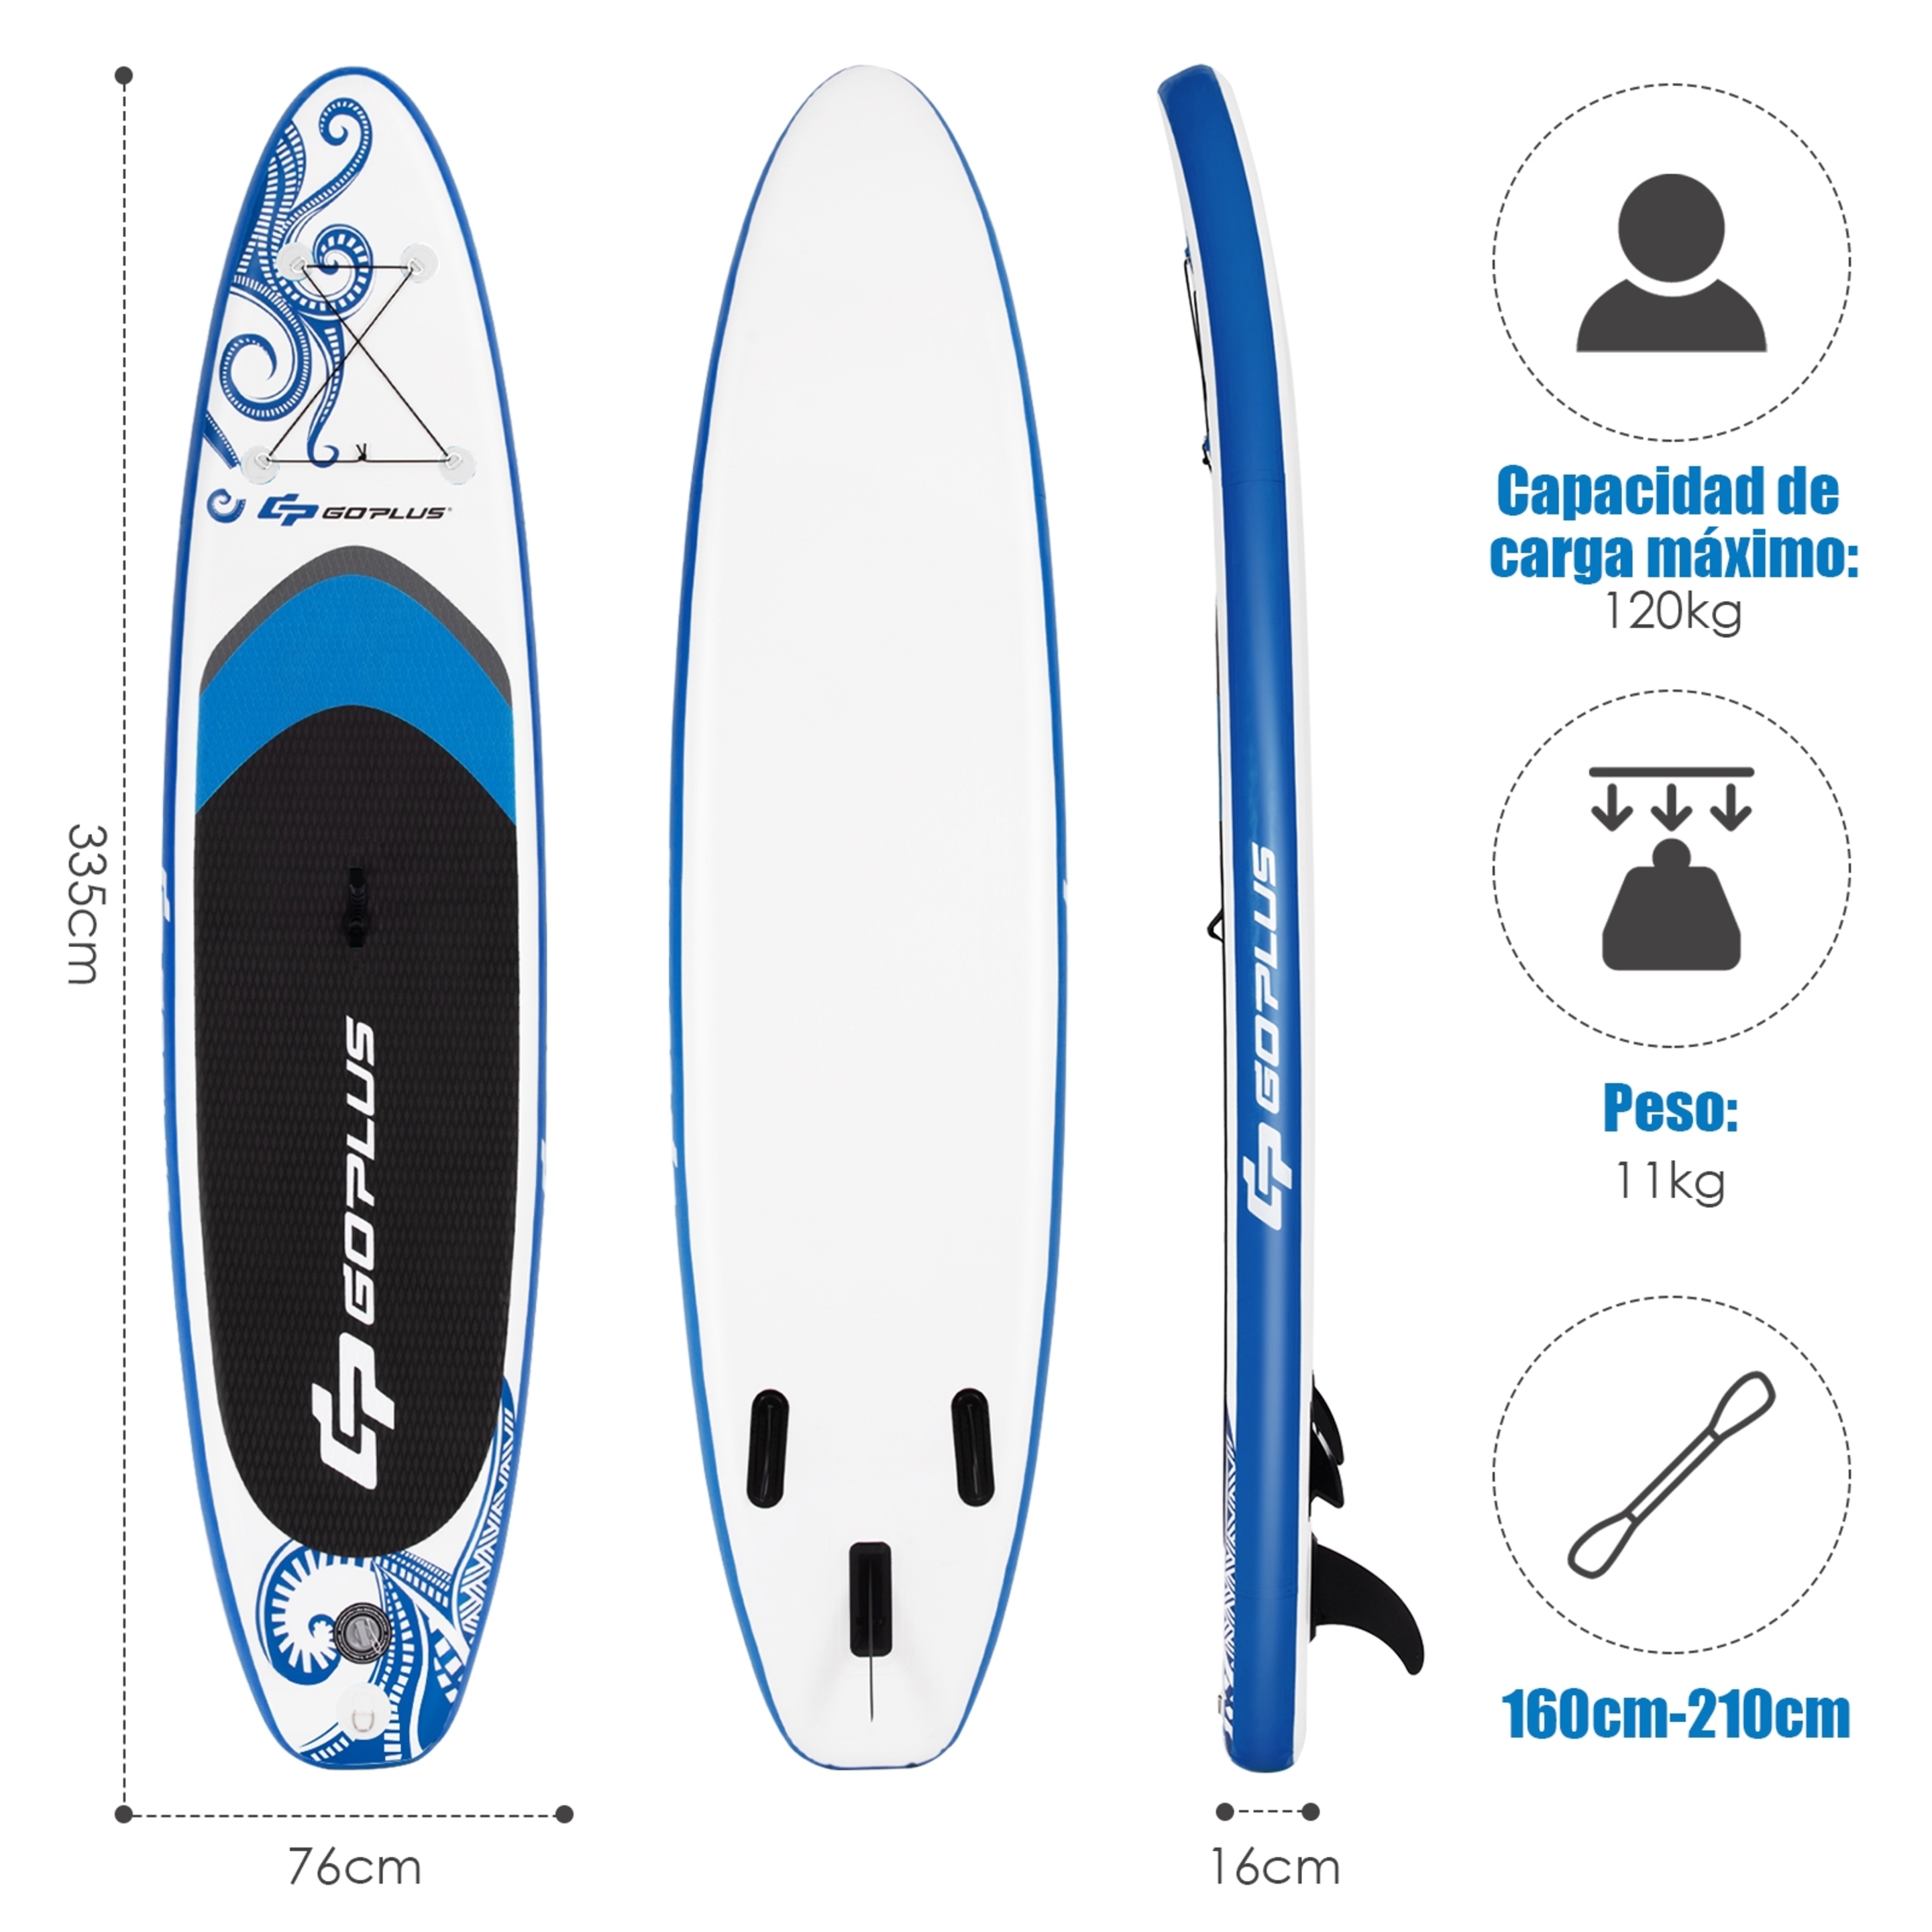 Tabla Inflable De Paddle Sup Costway - Azul/Blanco - Con Accesorios  MKP